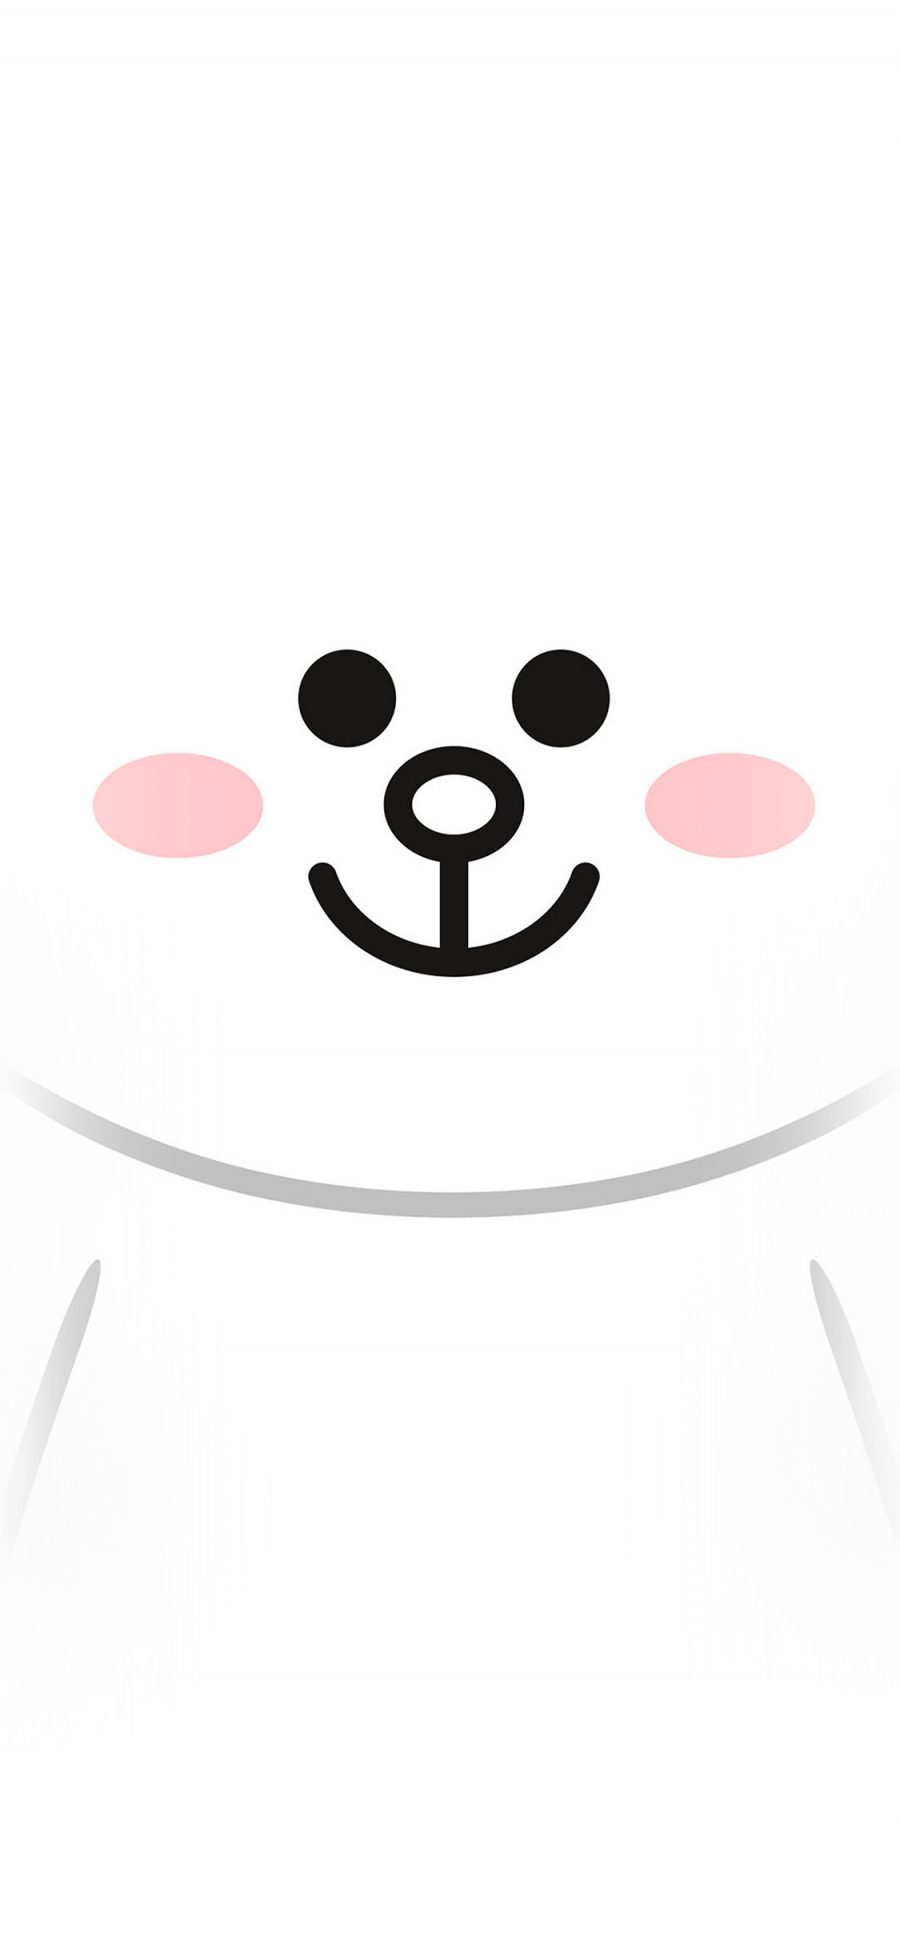 [2436×1125]可妮兔 白色 可爱 卡通 line friends 苹果手机动漫壁纸图片